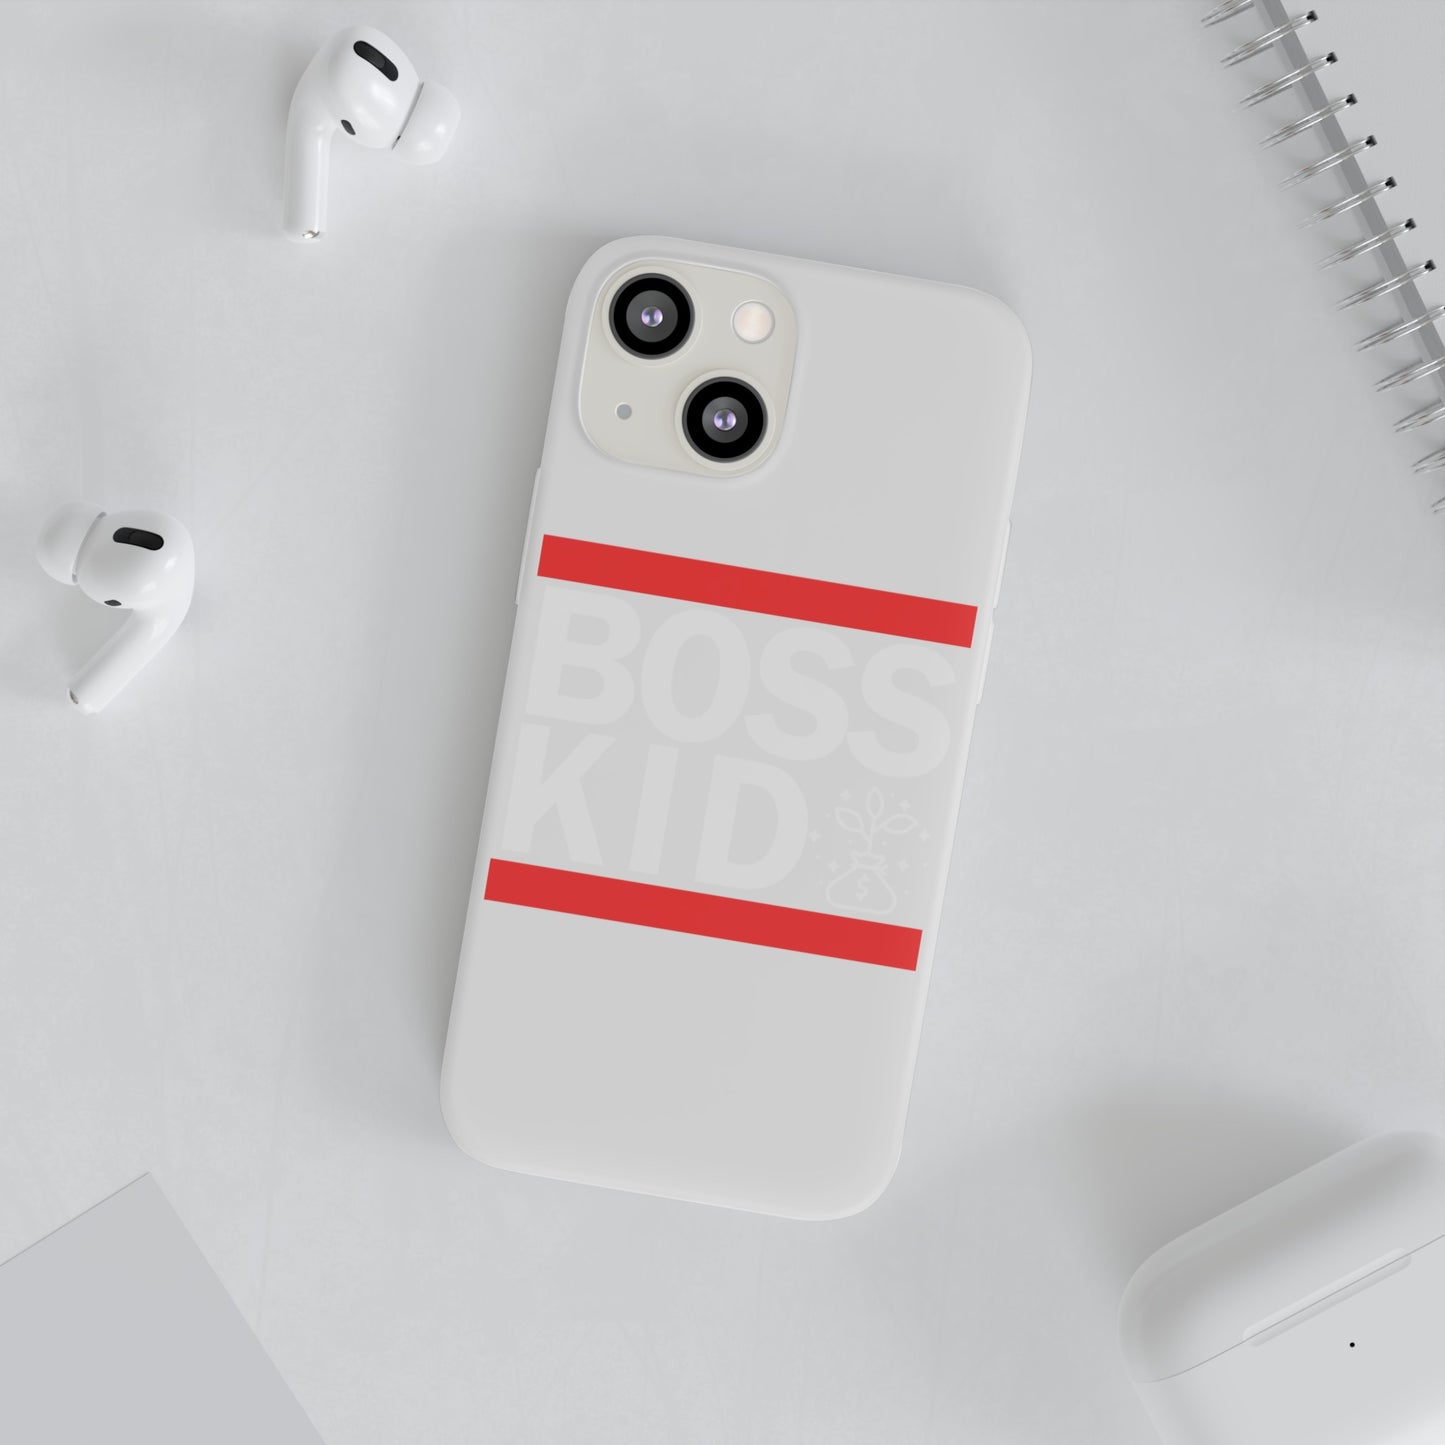 Boss Kid Flexi Cases - White Design